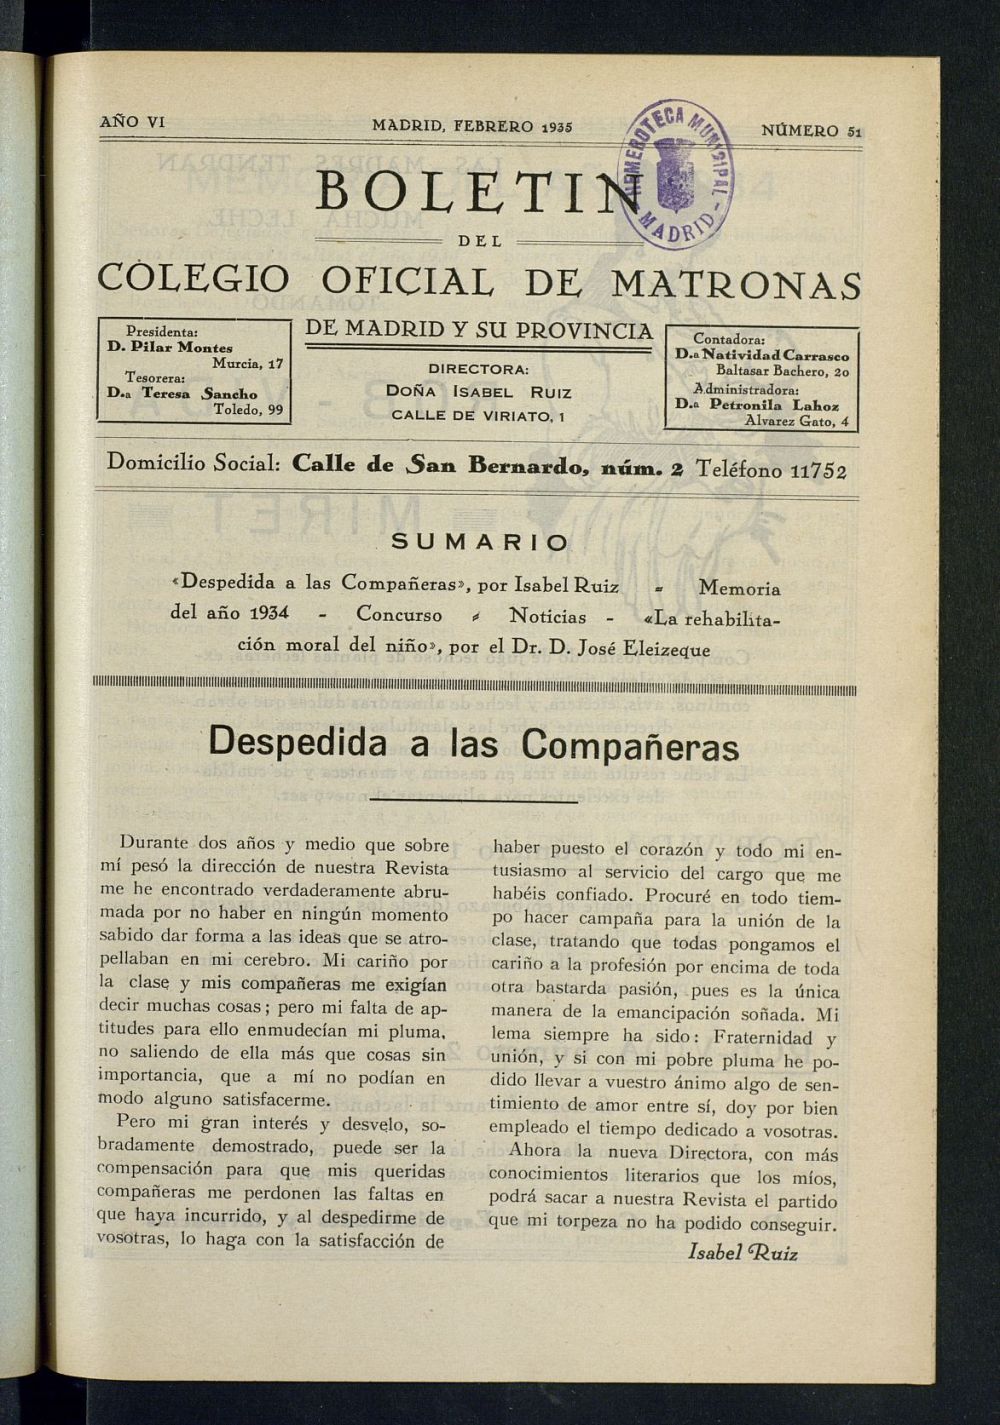 Boletn del Colegio Oficial de Matronas de Madrid y su Provincia de febrero de 1935